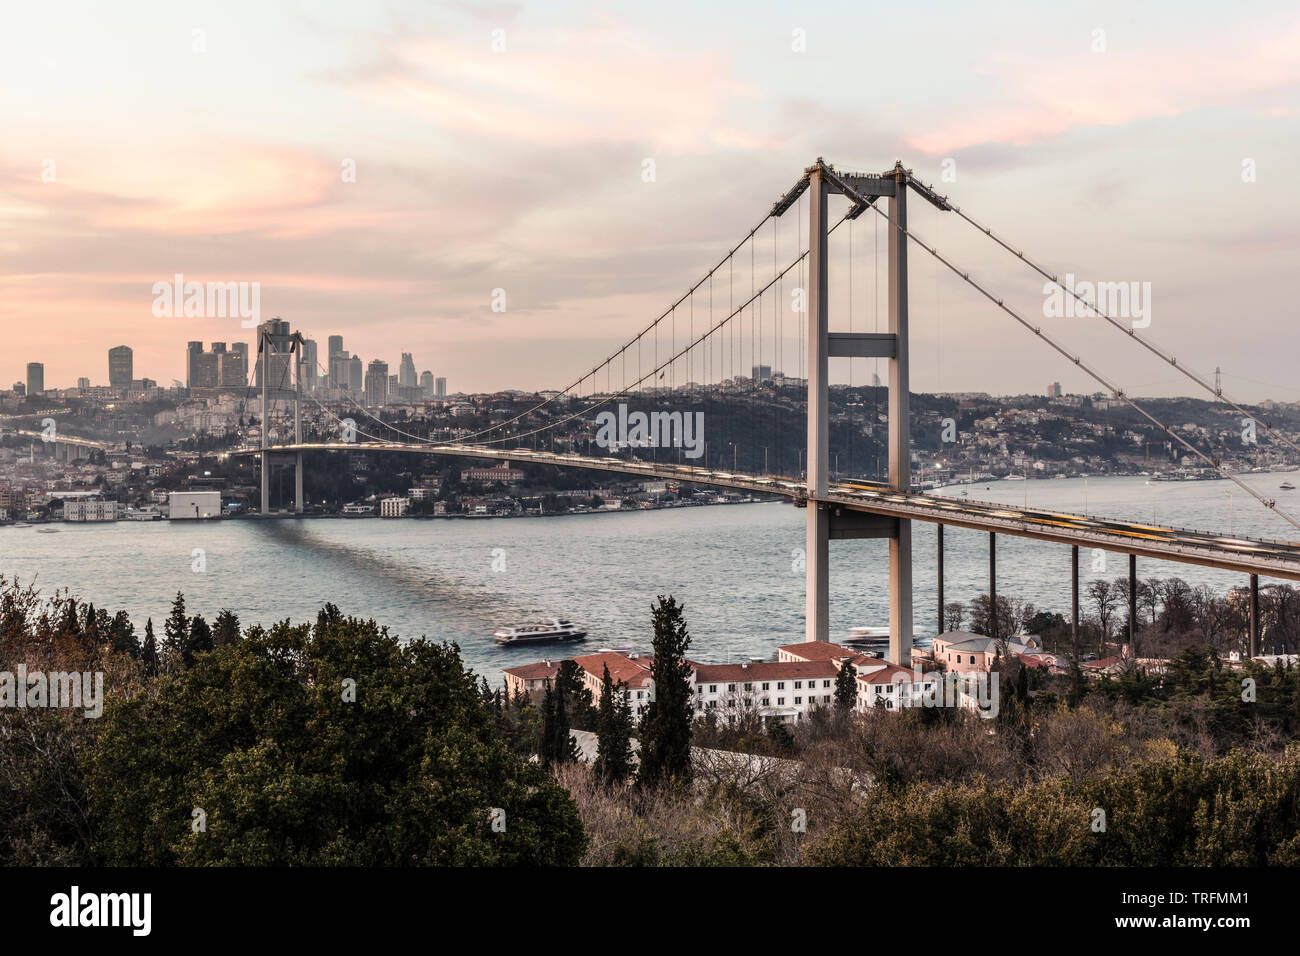 Bosporus-Brücke in Istanbul Türkei - zwischen Asien und Europa Stockfoto